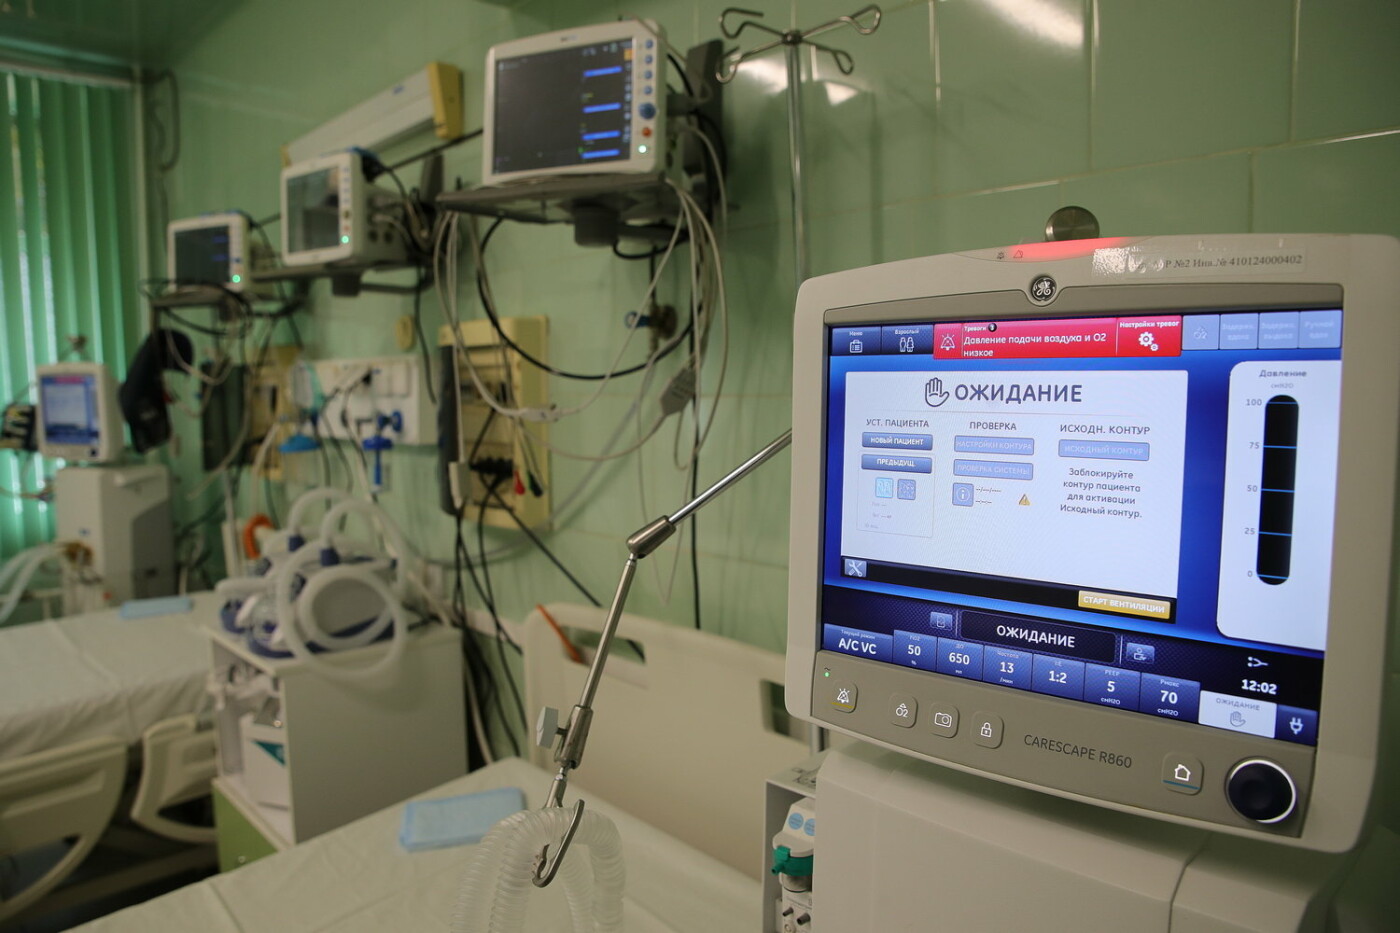 Оборудование ковидного госпиталя/ фото: сайт ПРО